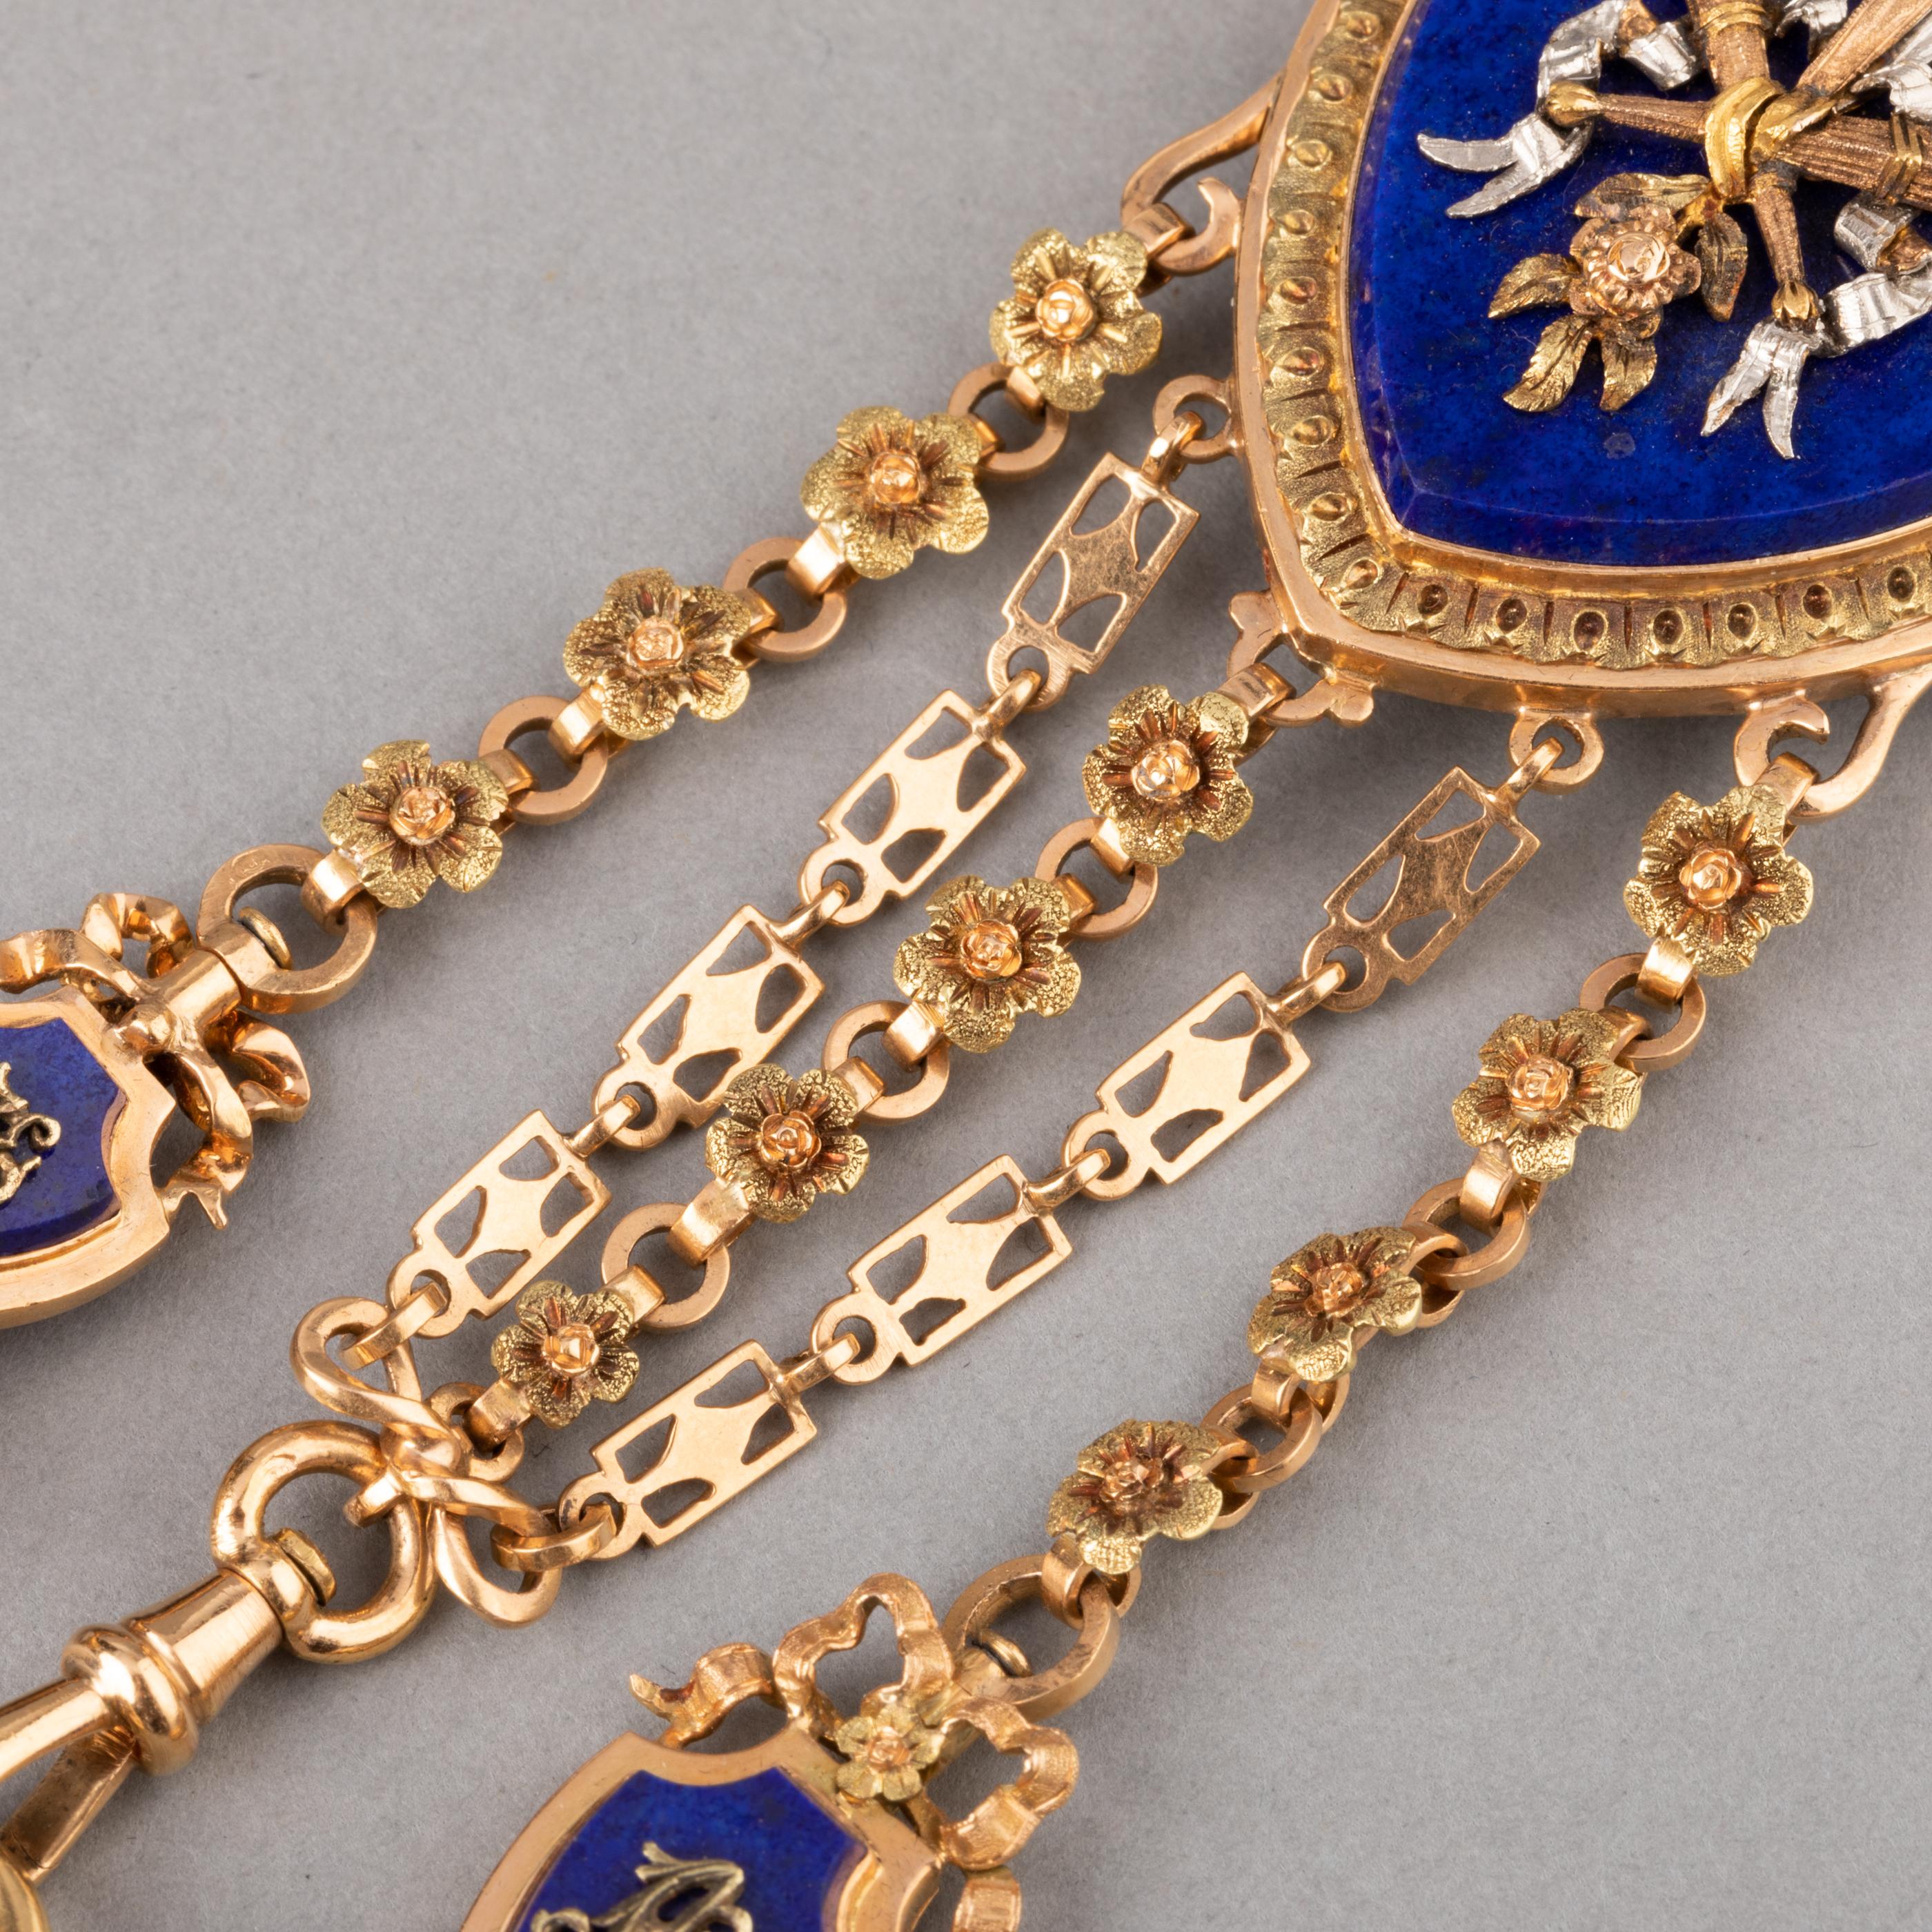 Women's or Men's Gold and Lapis Lazuli Antique Châtelaine Brooch by Le Roy & Fils Paris